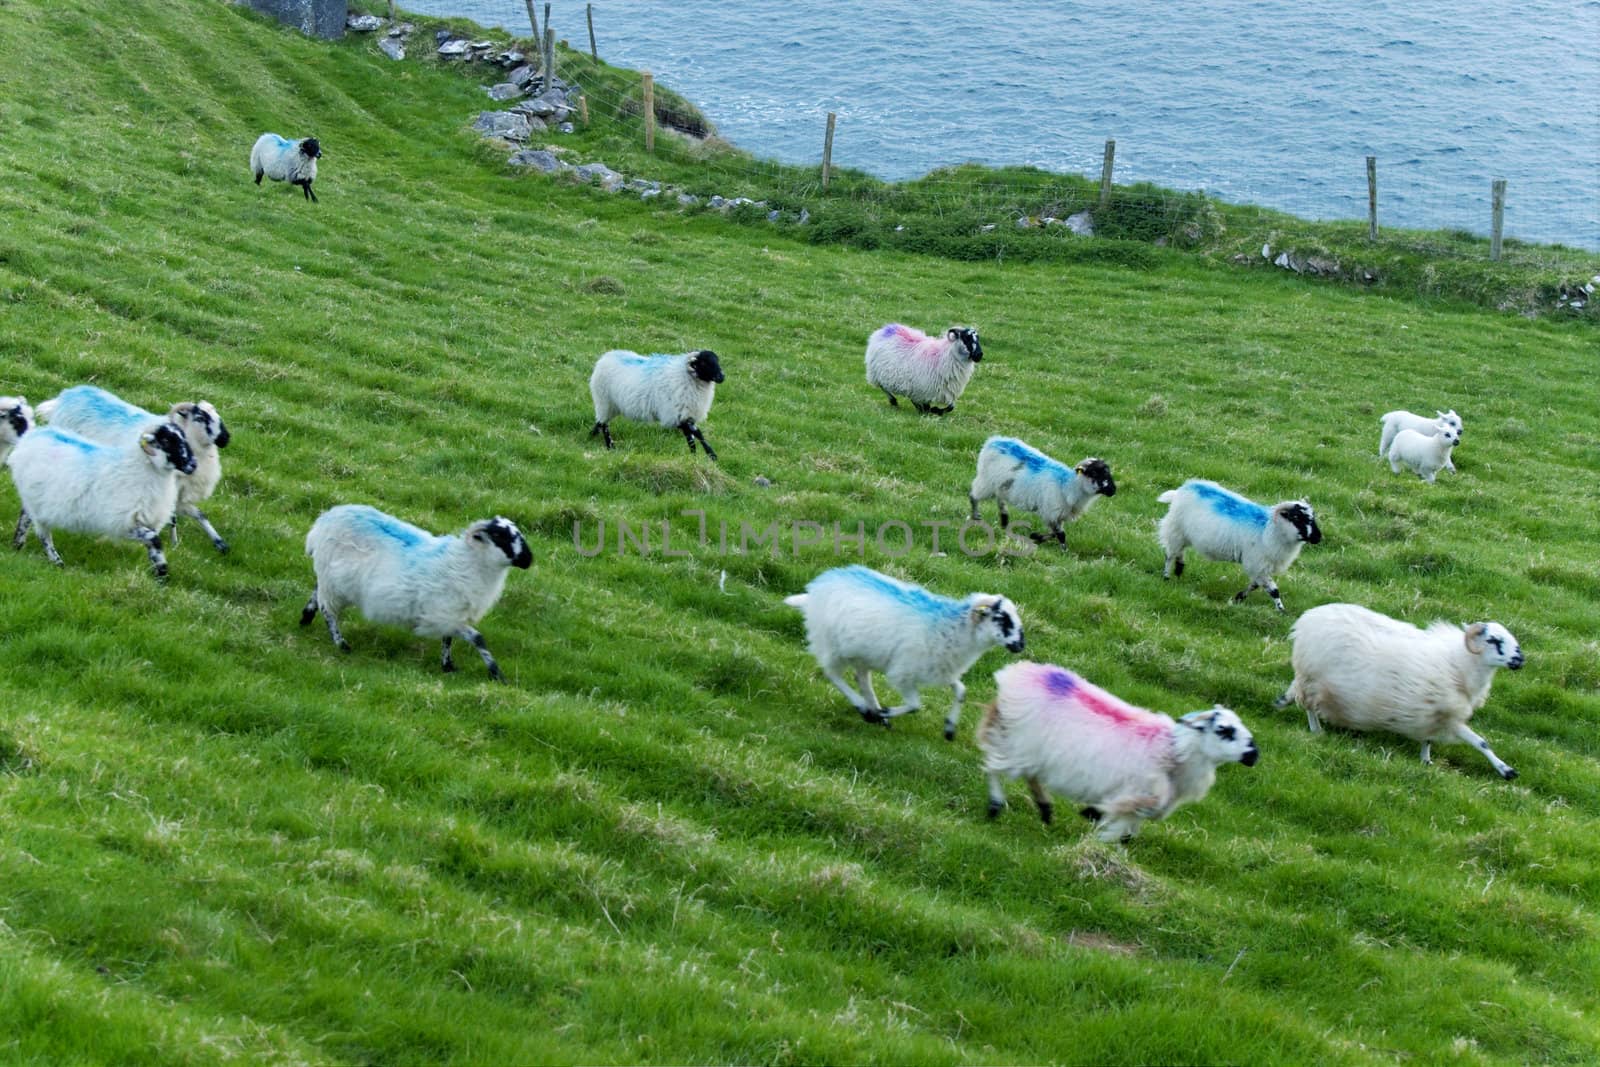 sheep grazing at Irish countryside